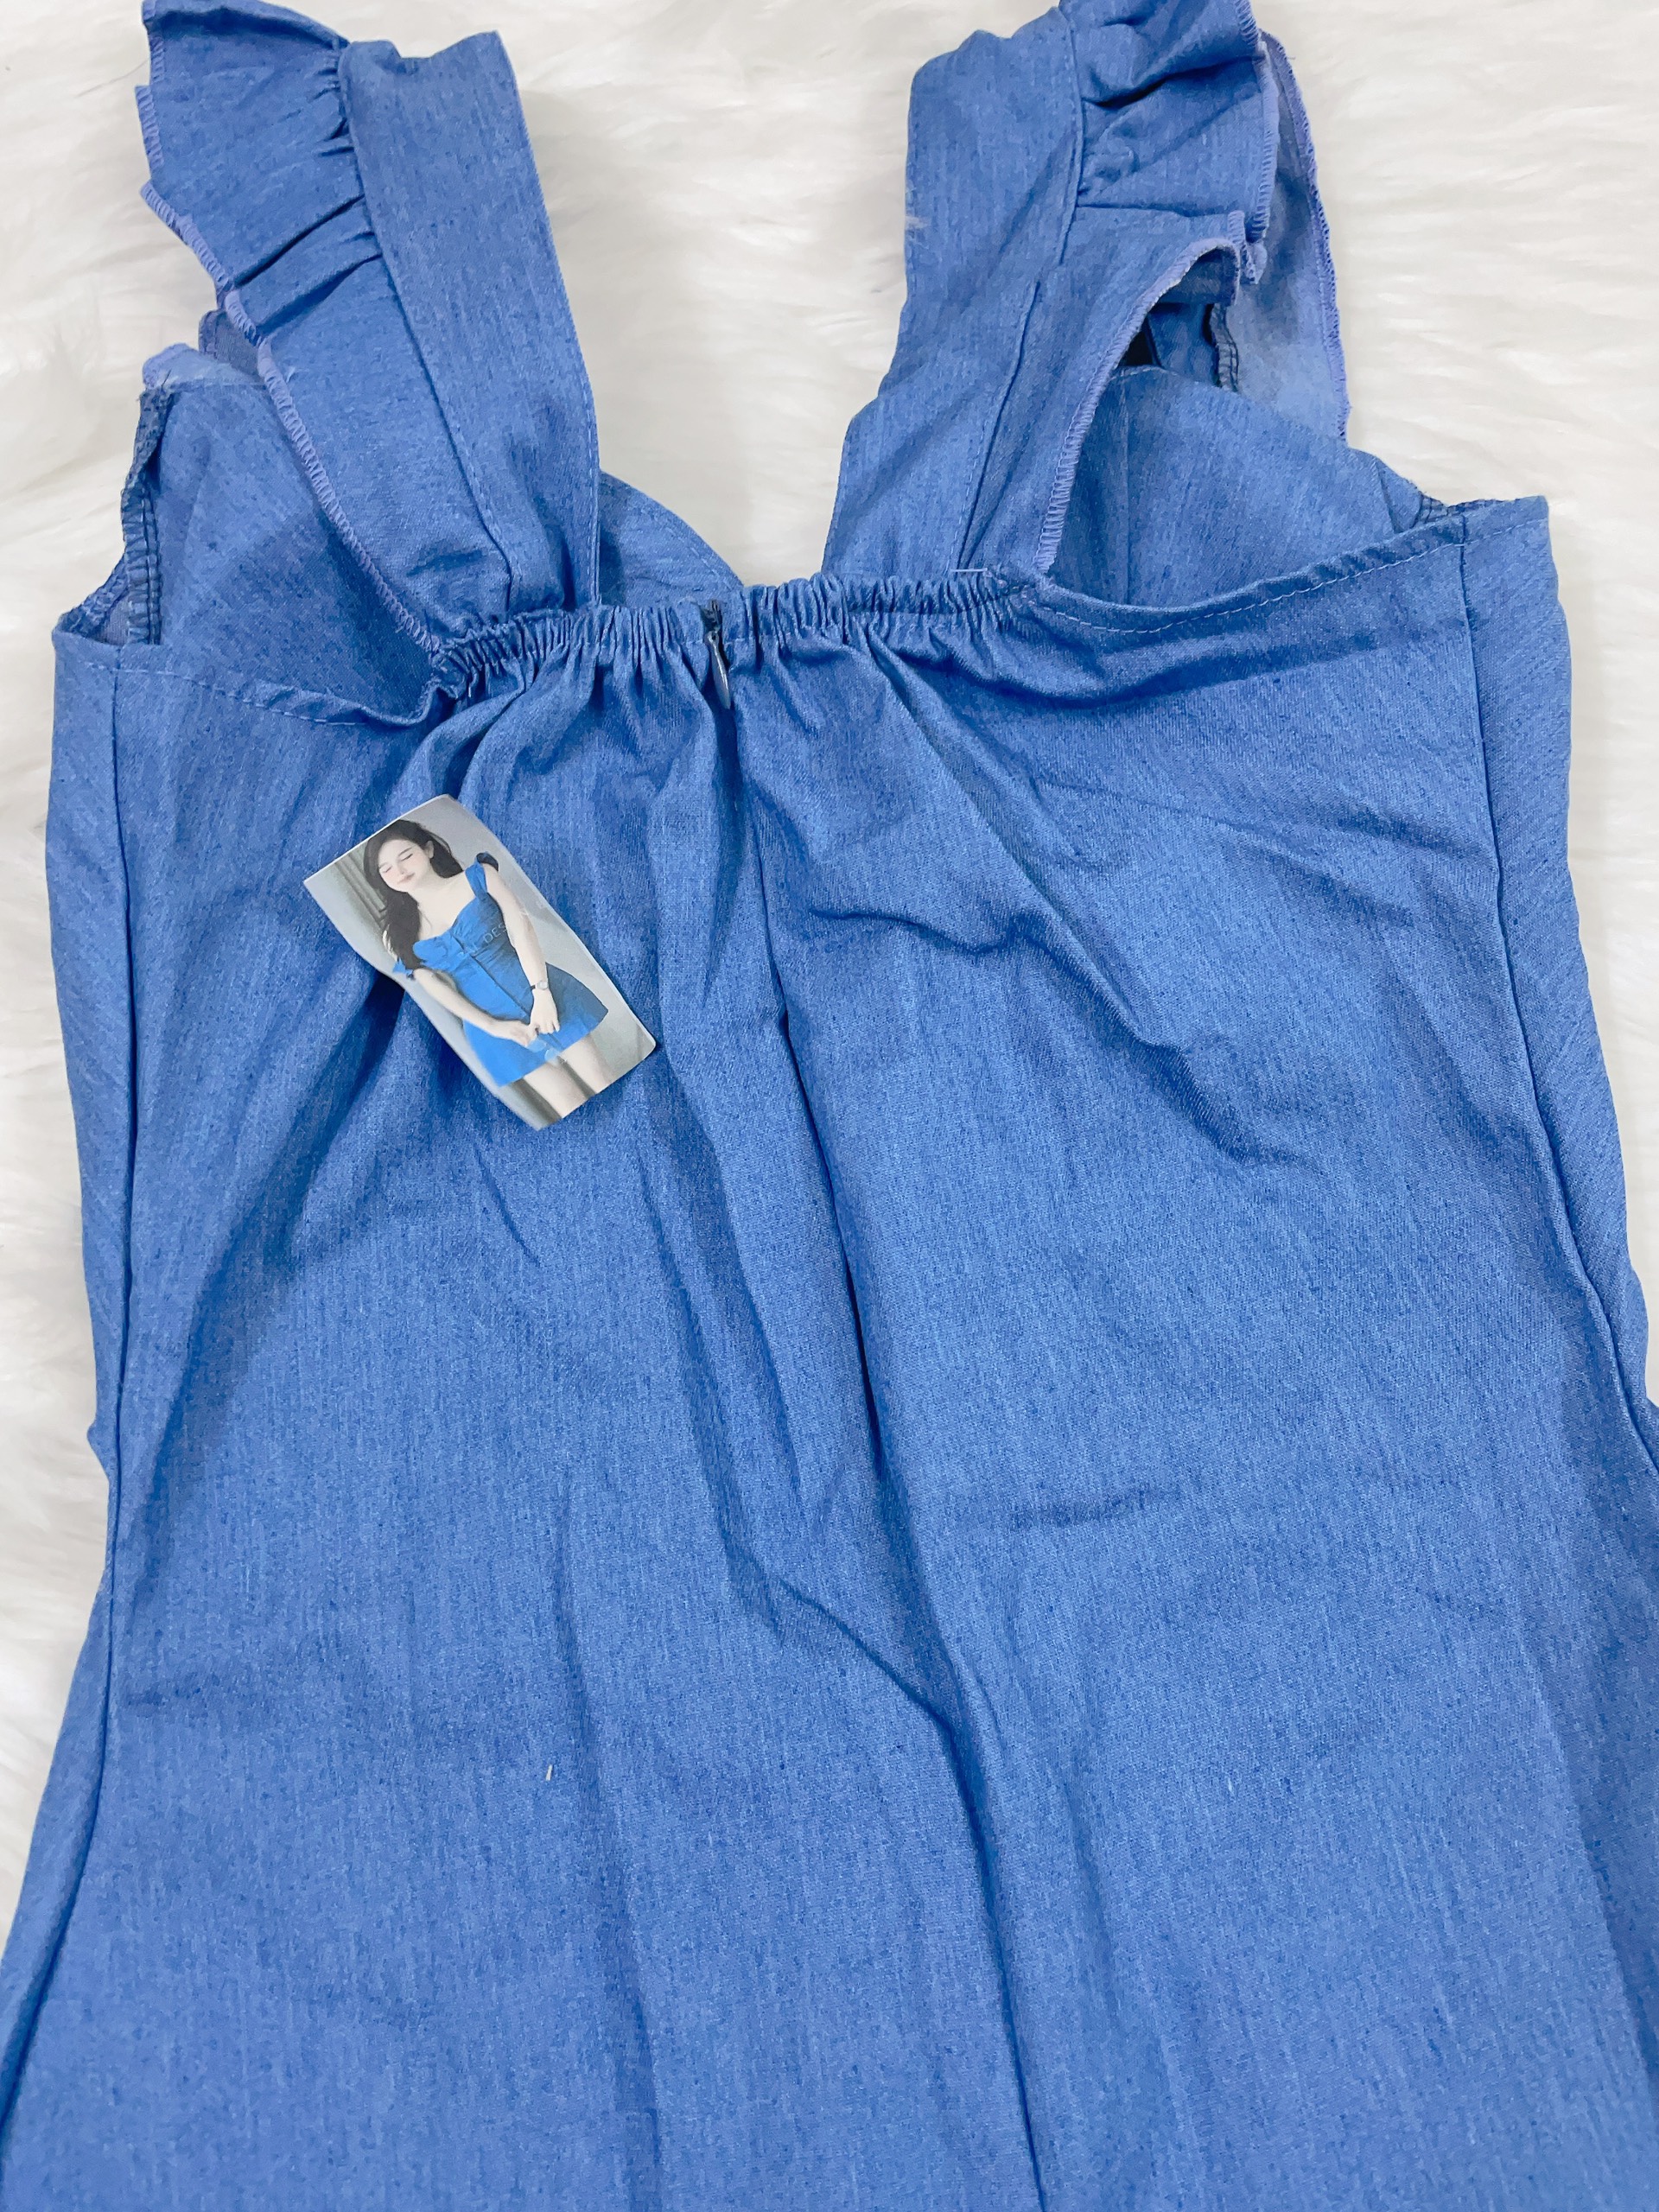 Đầm jean 2 dây bèo cúc đóng có mút Ánh Dương Clothing M203, váy jean 2 dây